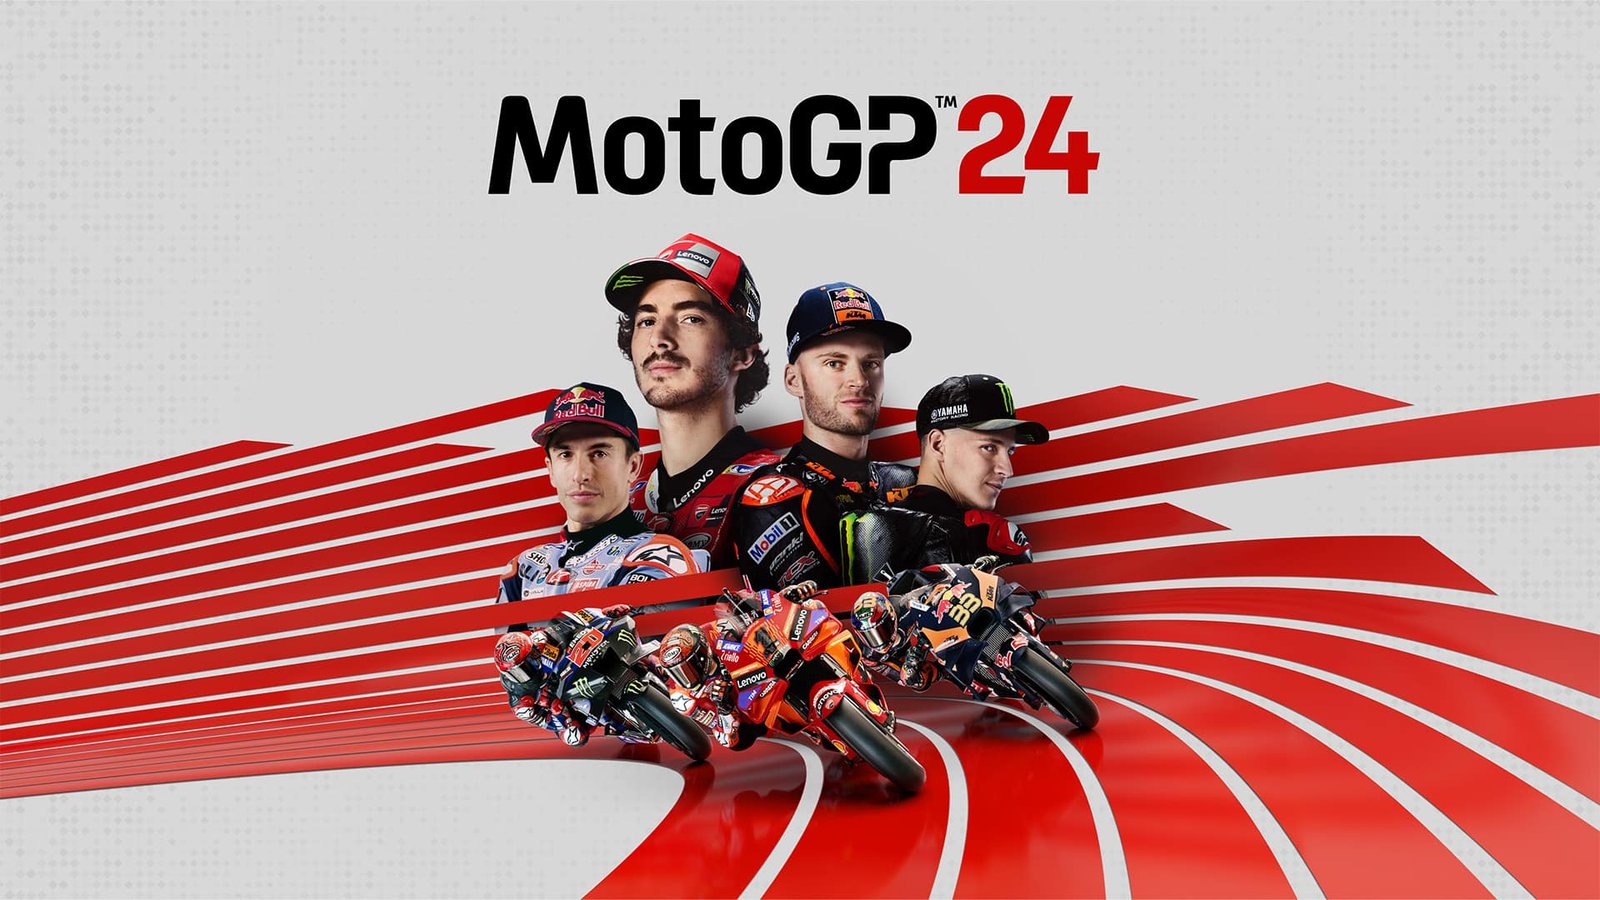 MotoGP 24 : une date de sortie annoncée pour début mai